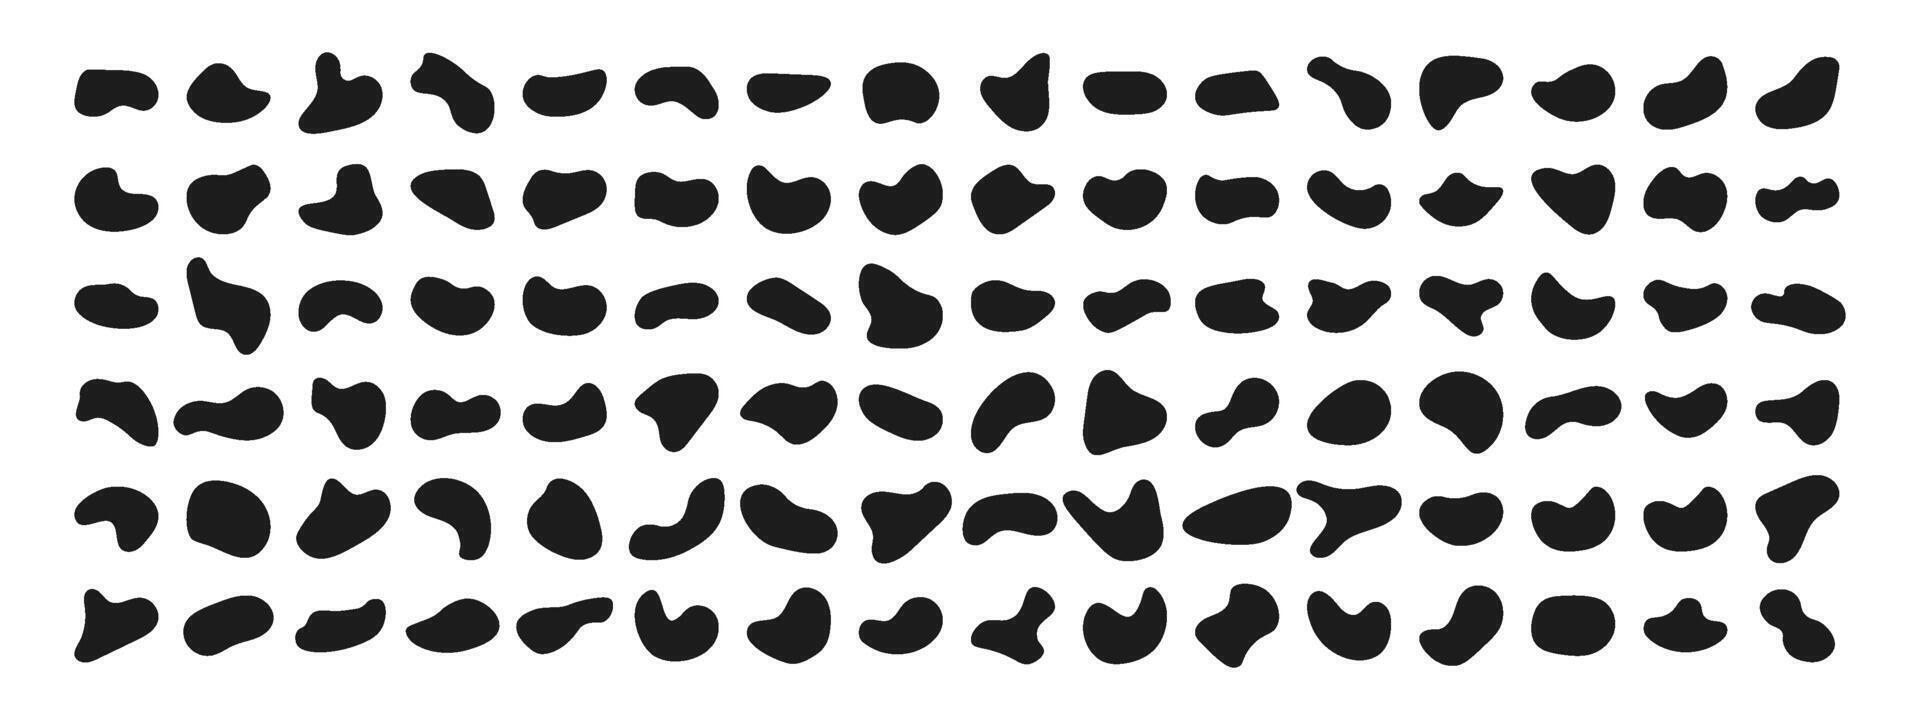 uppsättning av abstrakt organisk siffror. slumpmässig siffror av oregelbunden form. svart abstrakt fläckar, flytande element. bläck blottar och silhuetter av småsten vektor illustration